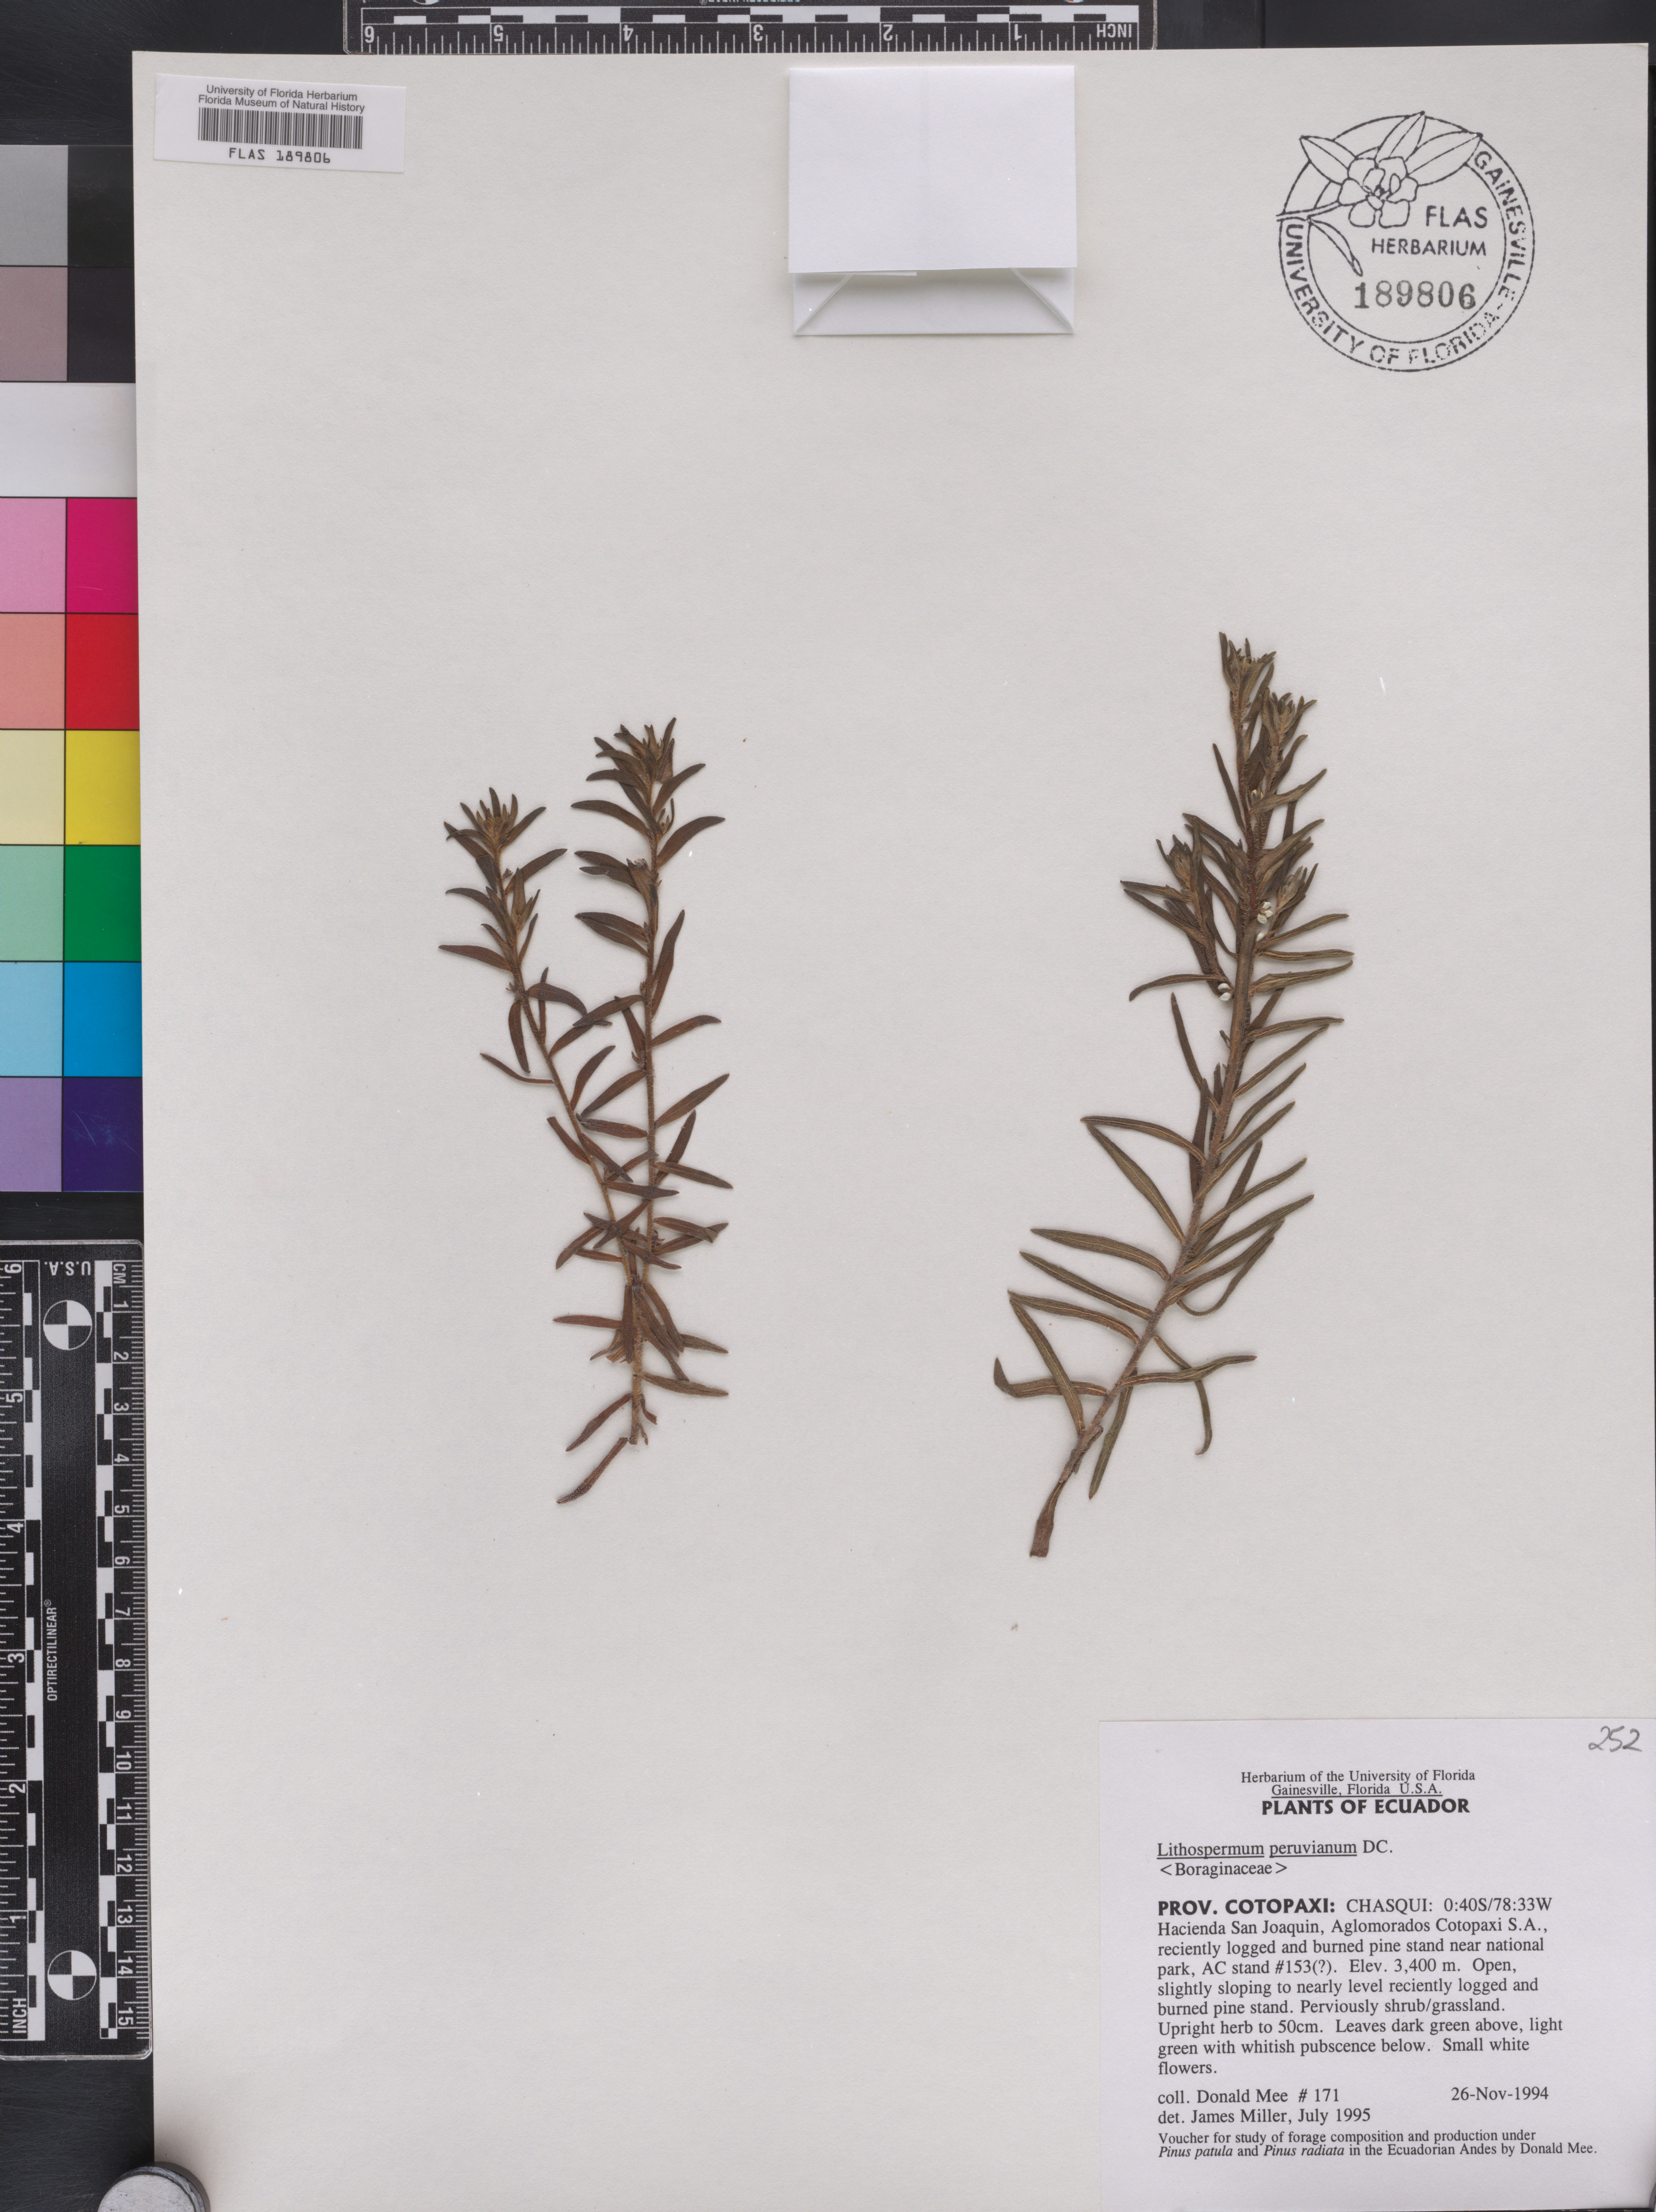 Lithospermum peruvianum image